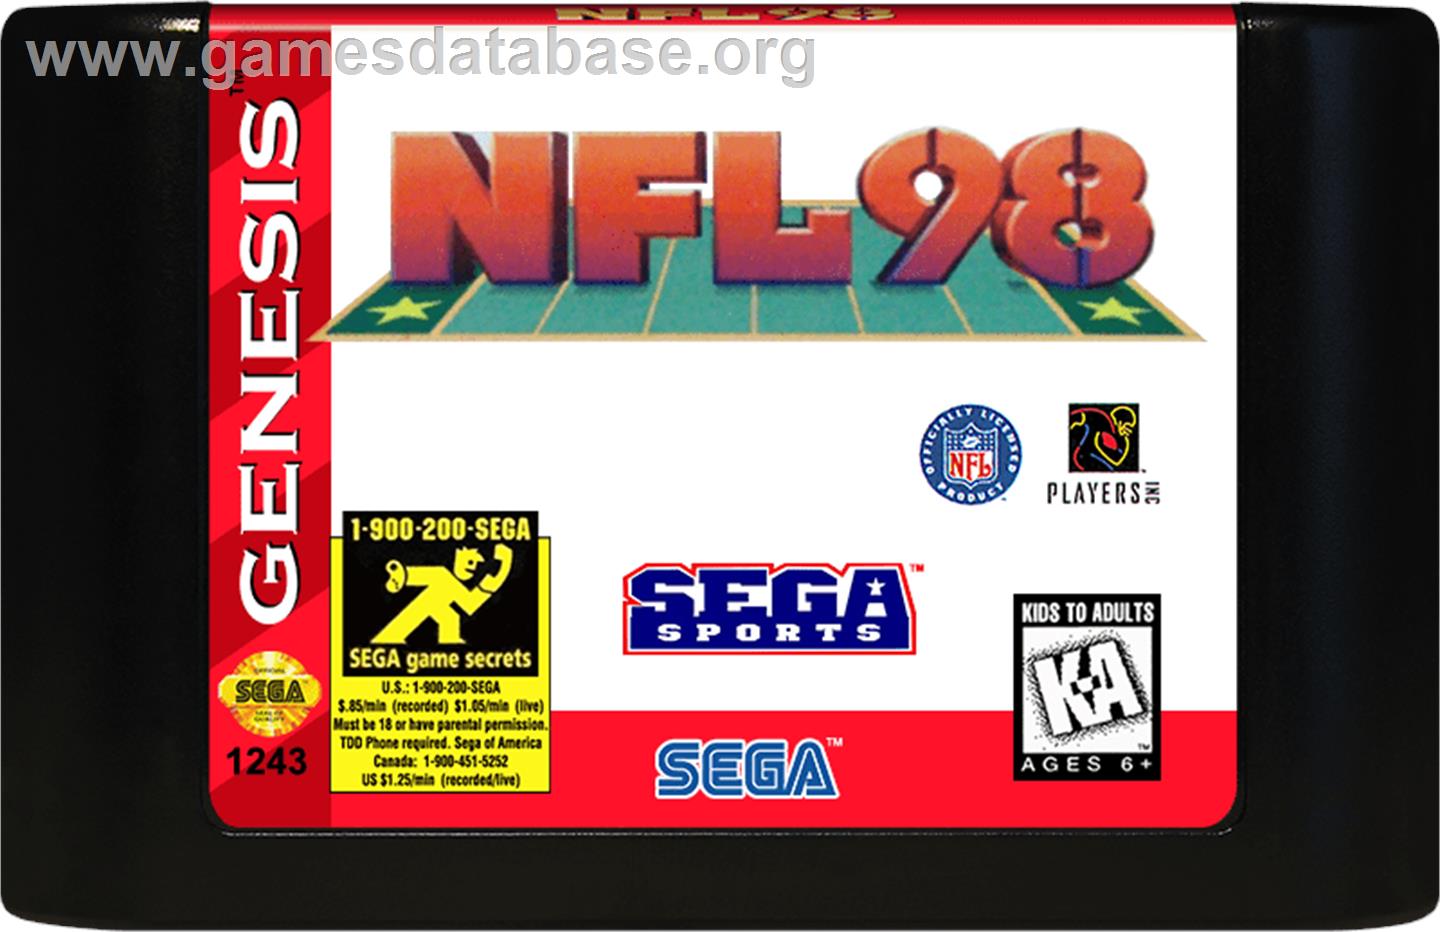 FIFA 97 - Sega Genesis - Artwork - Cartridge